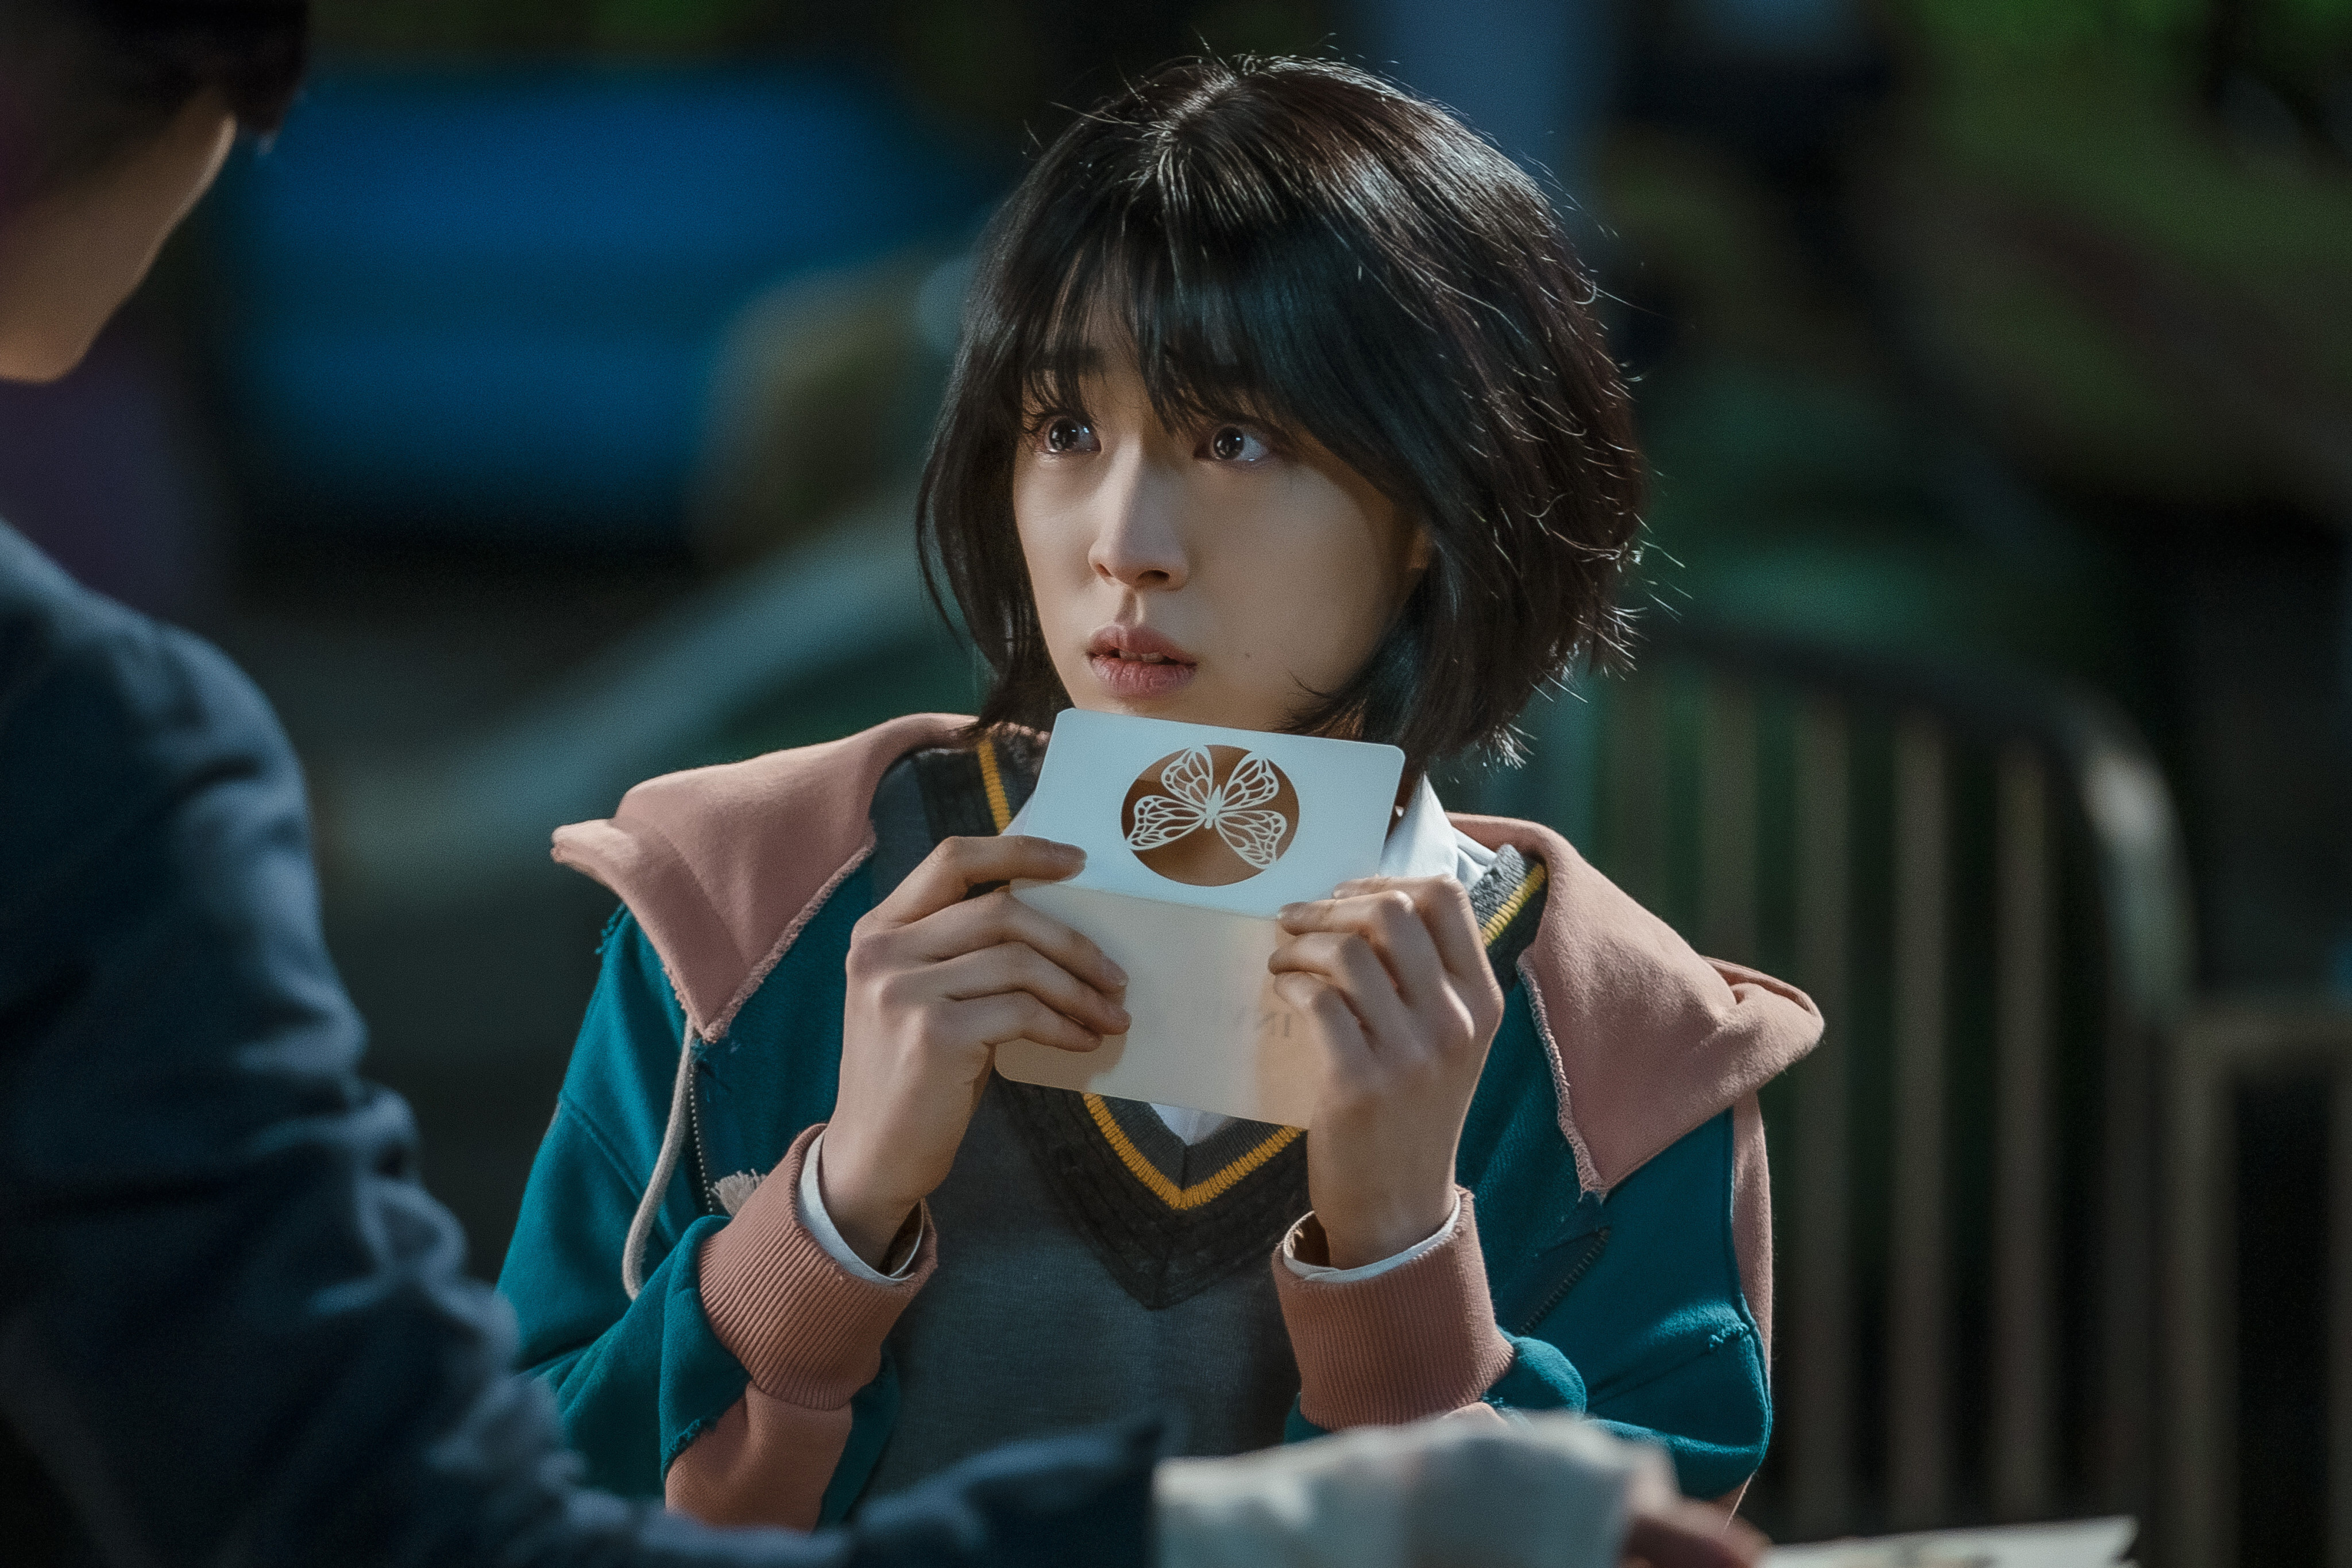 27 Best Korean Drama Series to Watch on Netflix in 2022